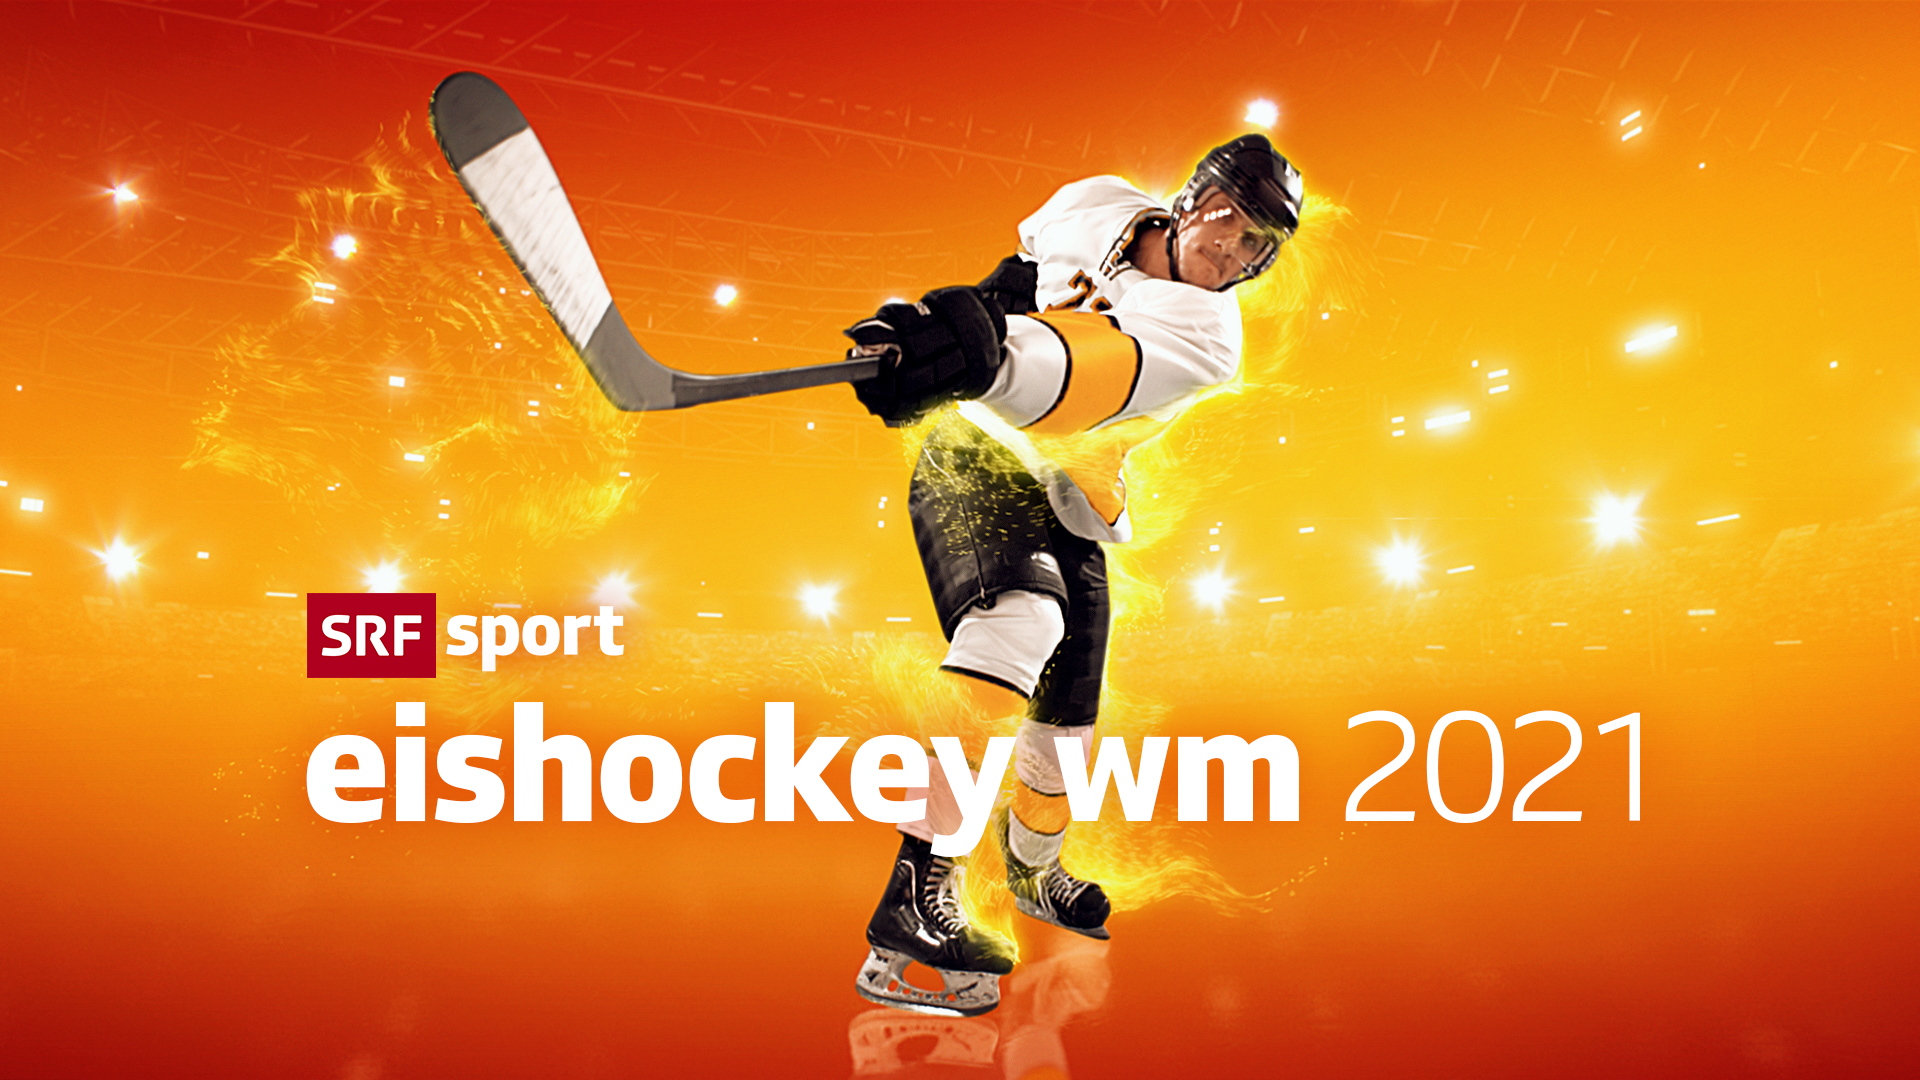 Eishockey-WM 2021 SRF mit ausgebauter Berichterstattung